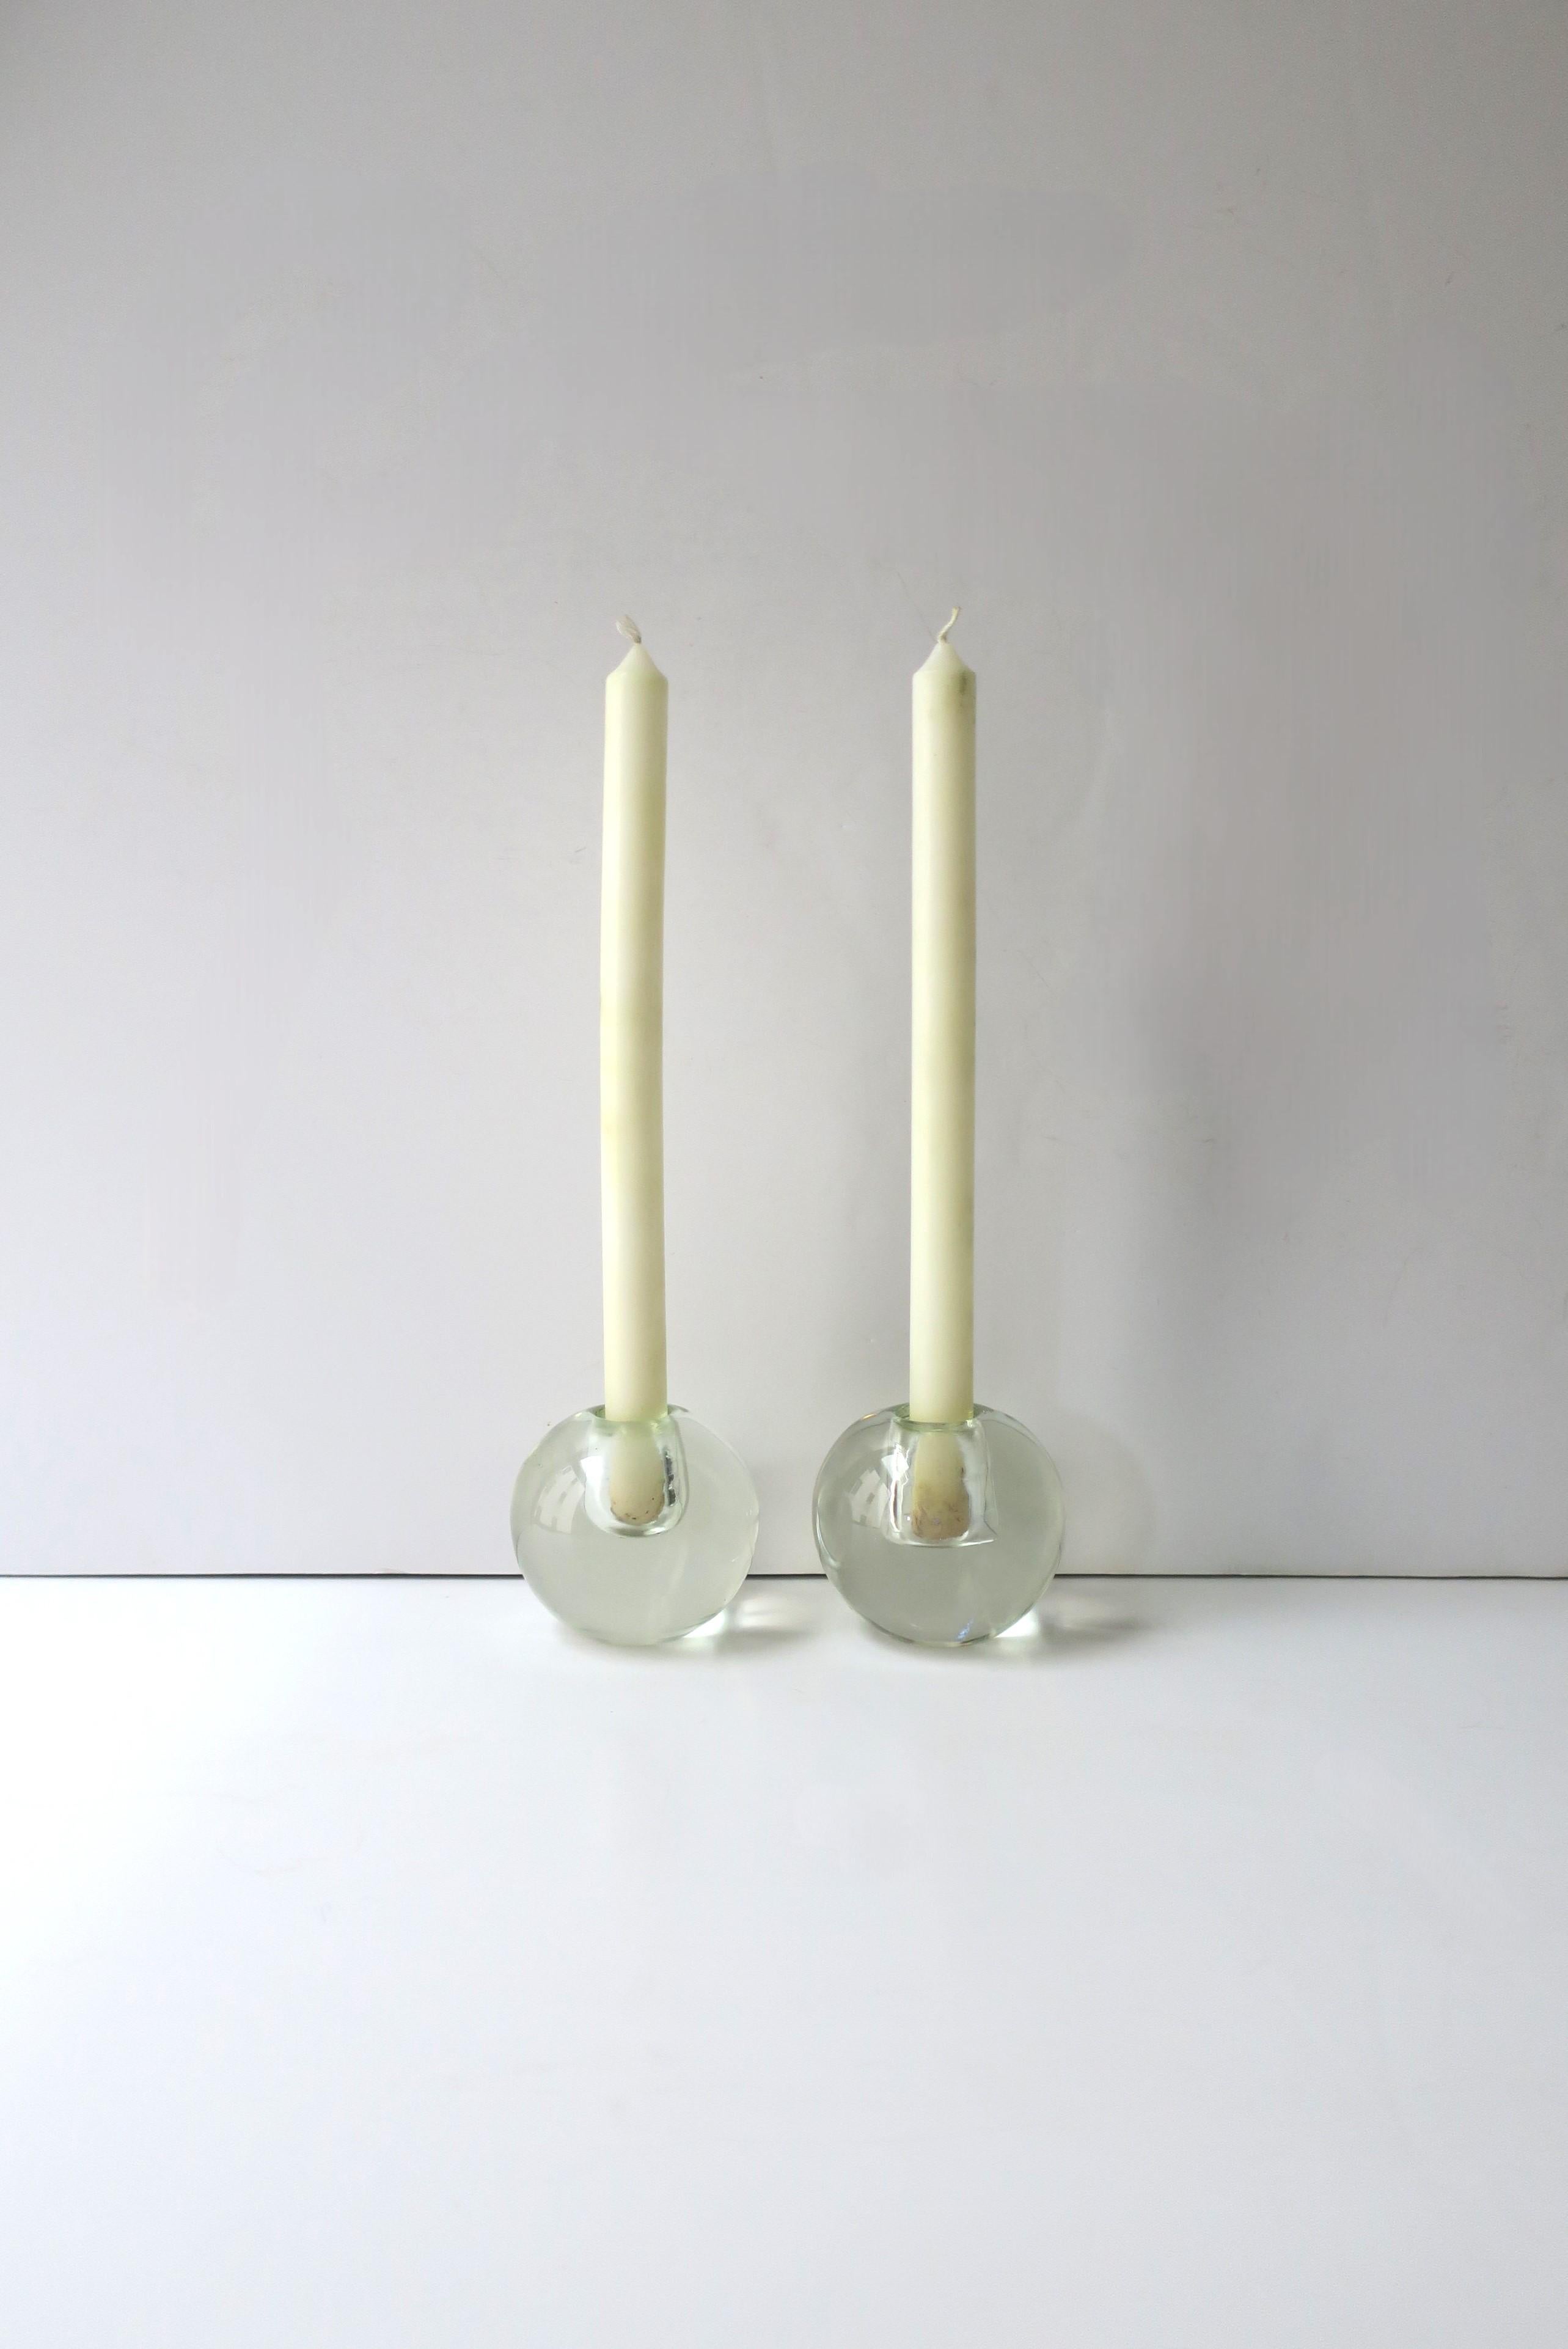 Ein beachtliches Paar Kerzenhalter aus transparentem Glas mit runder Kugelform, im Stil der Moderne, etwa Mitte/Ende des 20. Sehr guter Zustand, wie auf den Bildern zu sehen. Abmessungen: 3